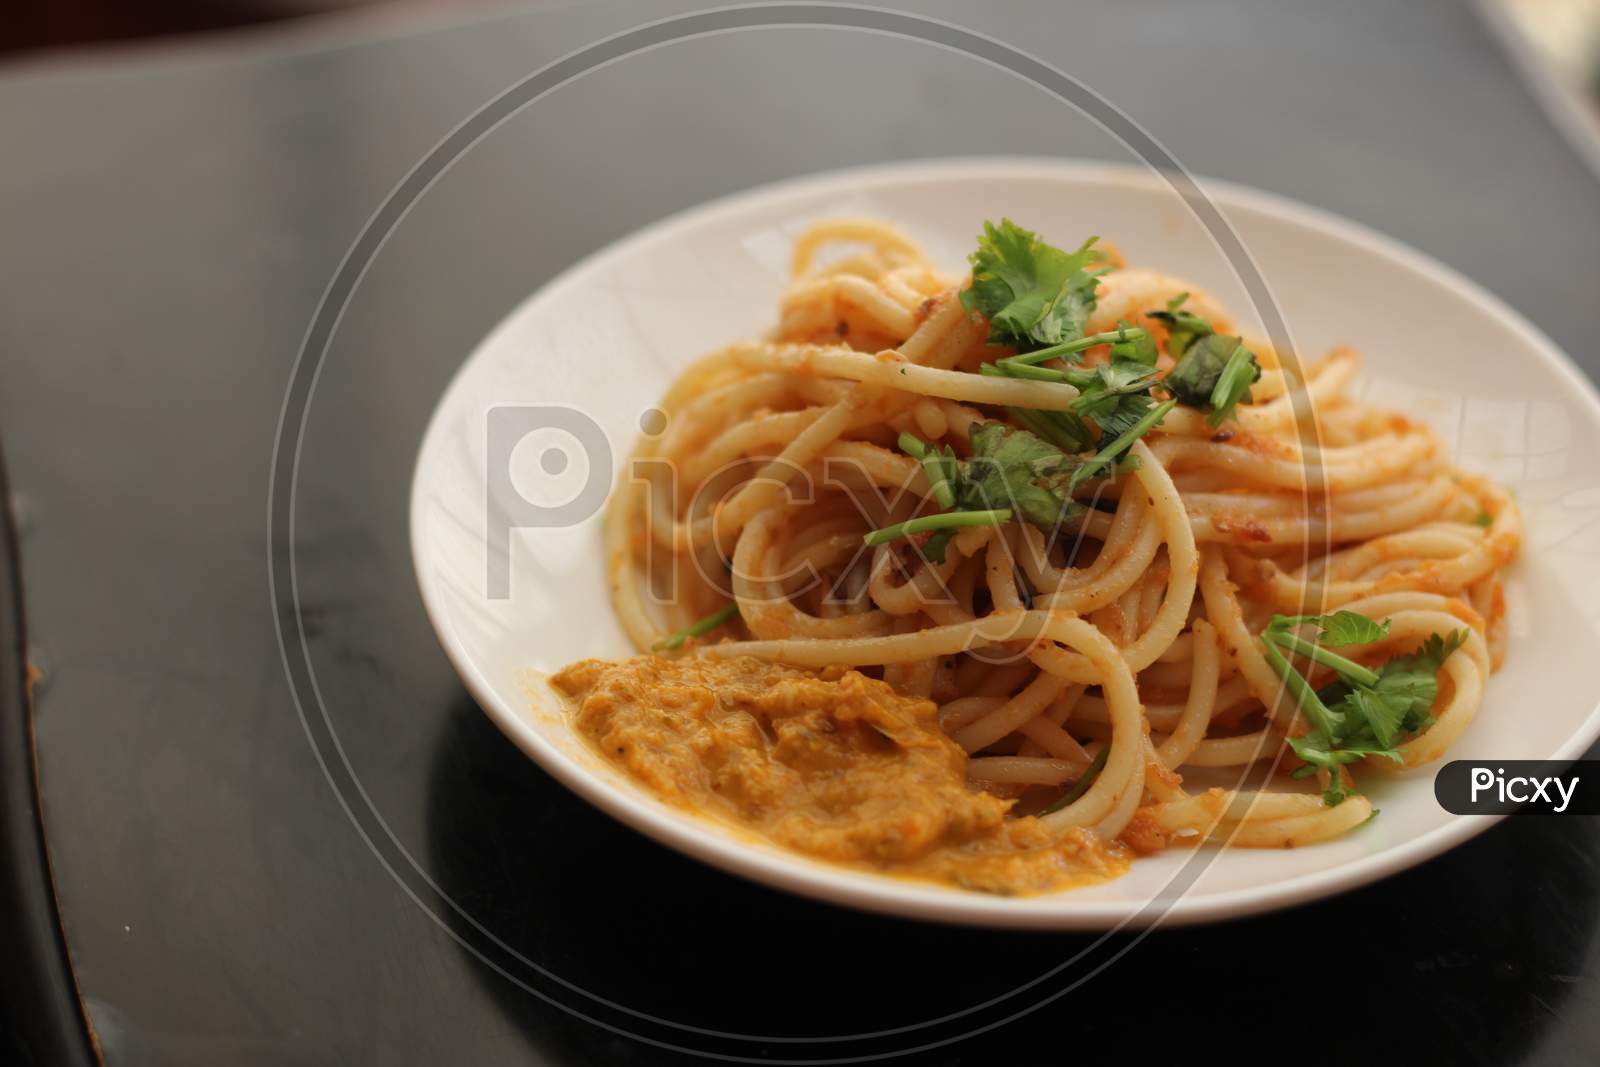 Classic Tomato spaghetti with coriander on top